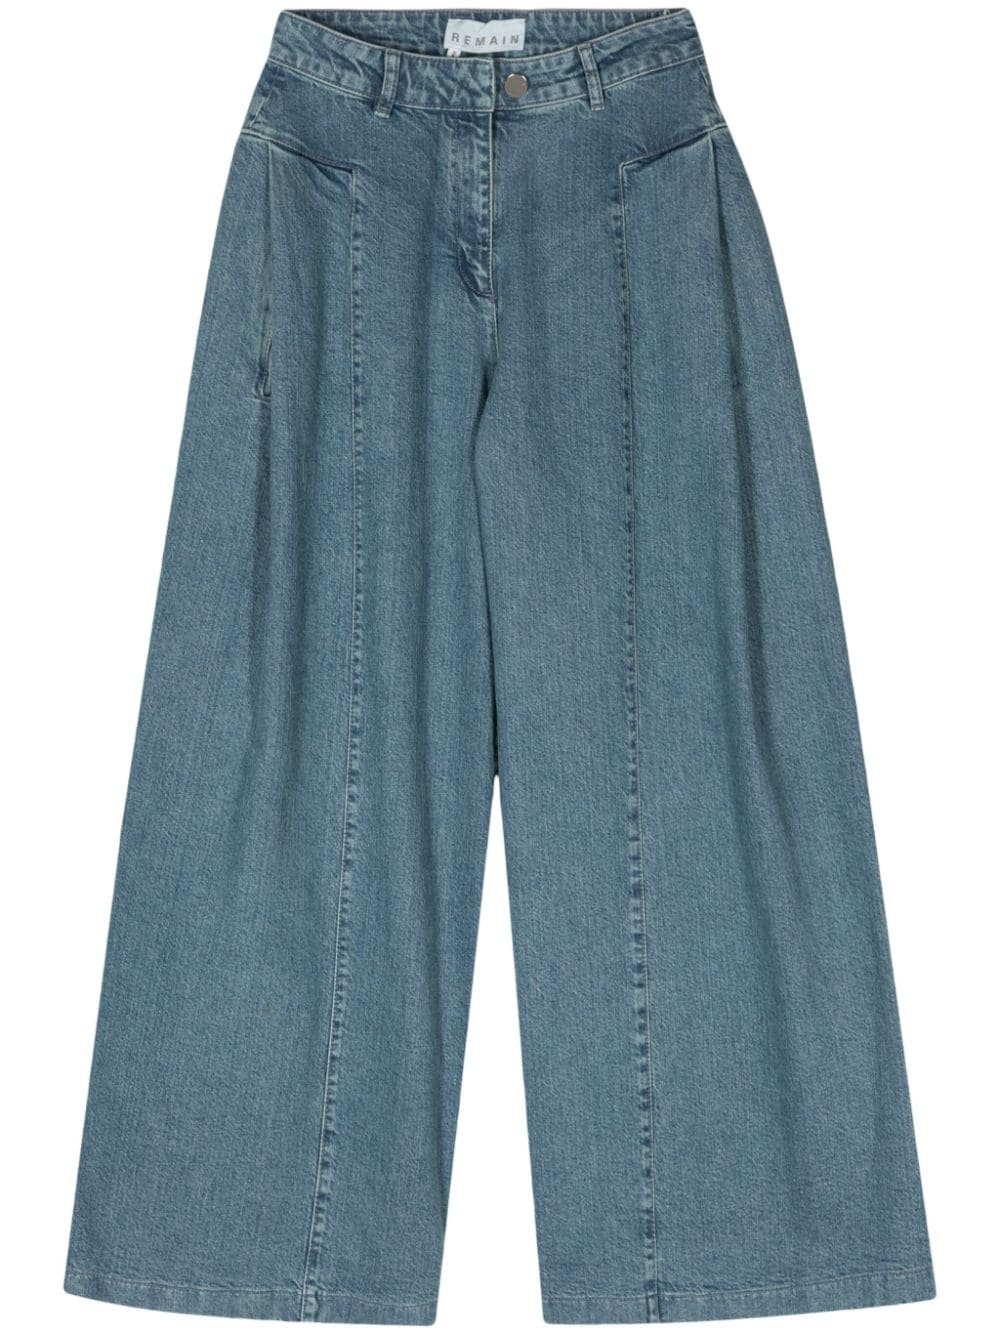 REMAIN mid-rise wide-leg jeans - Blue von REMAIN